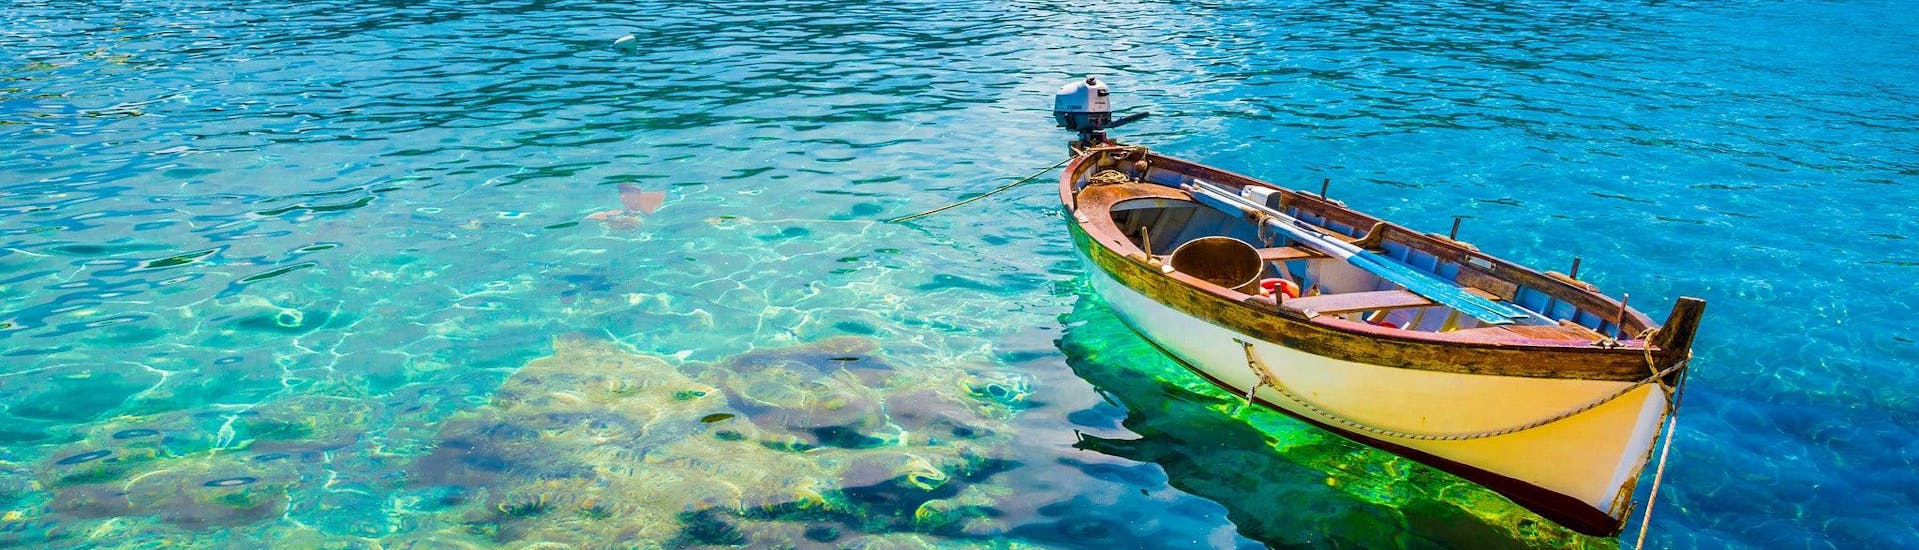 Un bateau flotte sur les eaux claires de Fetovaia, qui est une destination populaire pour les balades en bateau.